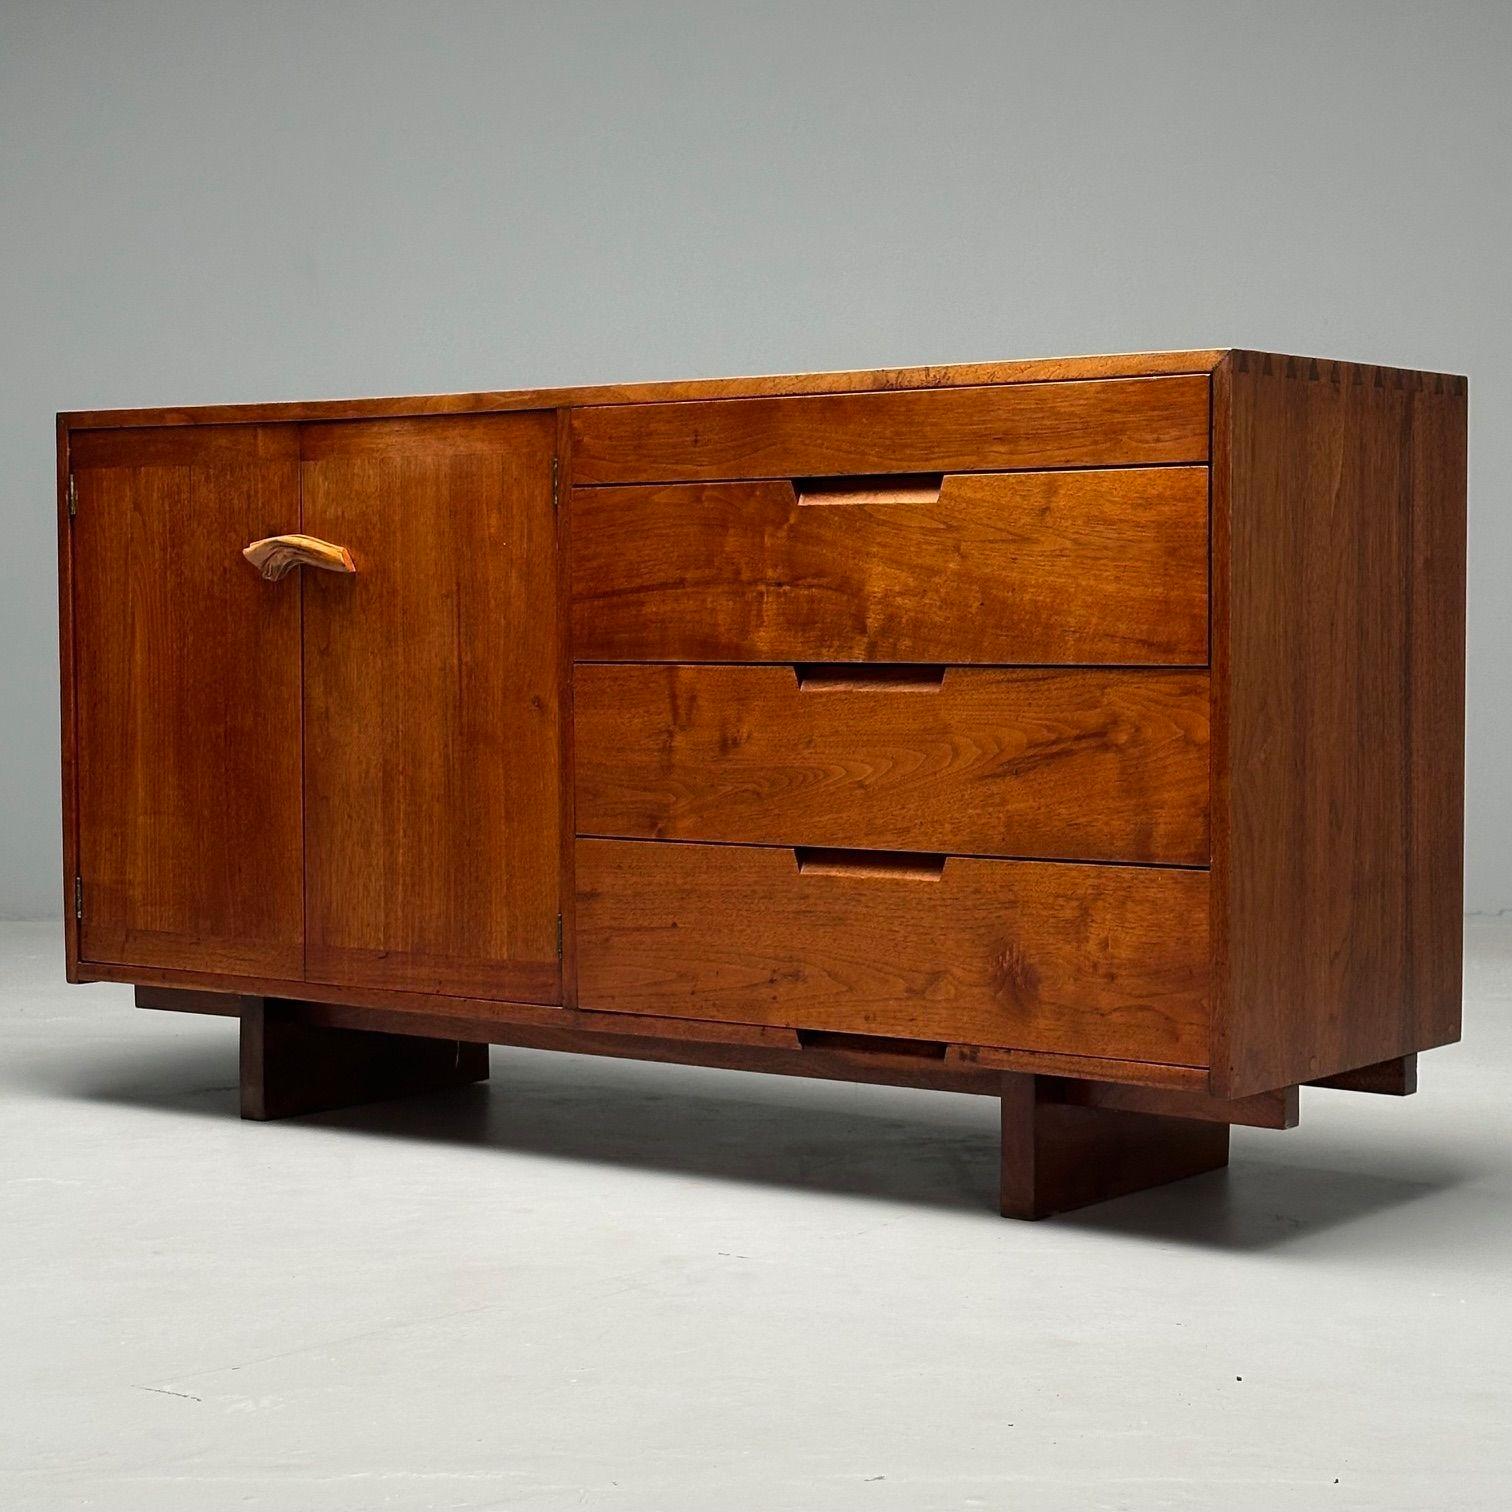 Seltener Schrank von George Nakashima, American Studio, Mid-Century Modern, Seltener Schrank, USA, 1953 (Holz) im Angebot